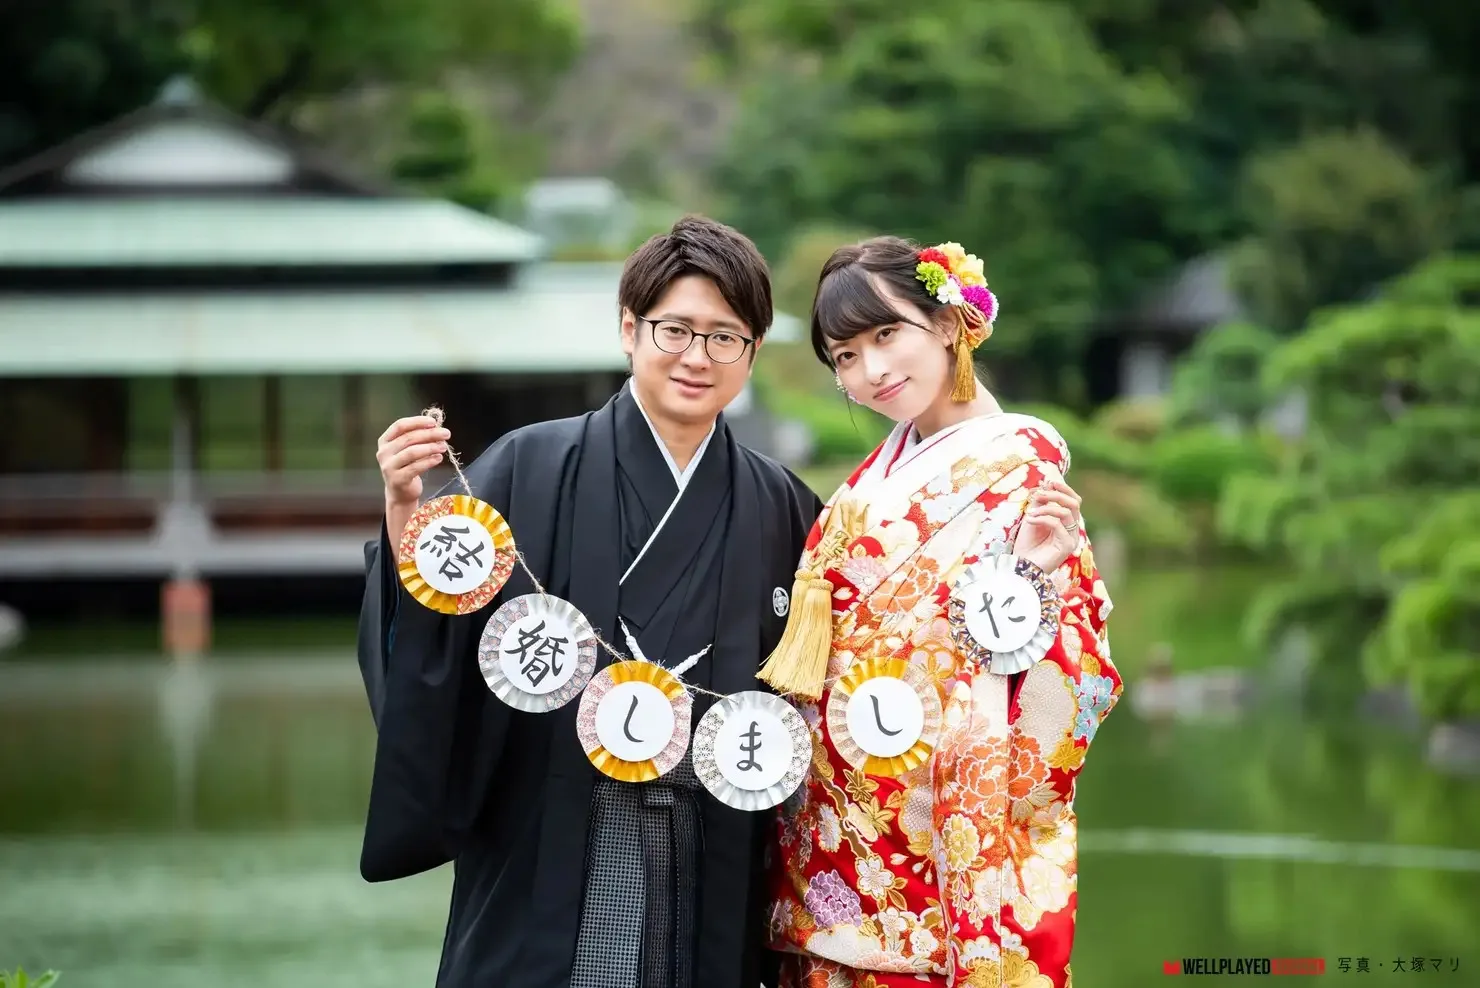 格斗游戏职业选手 Fuudo 宣布与写真偶像仓持由香结婚